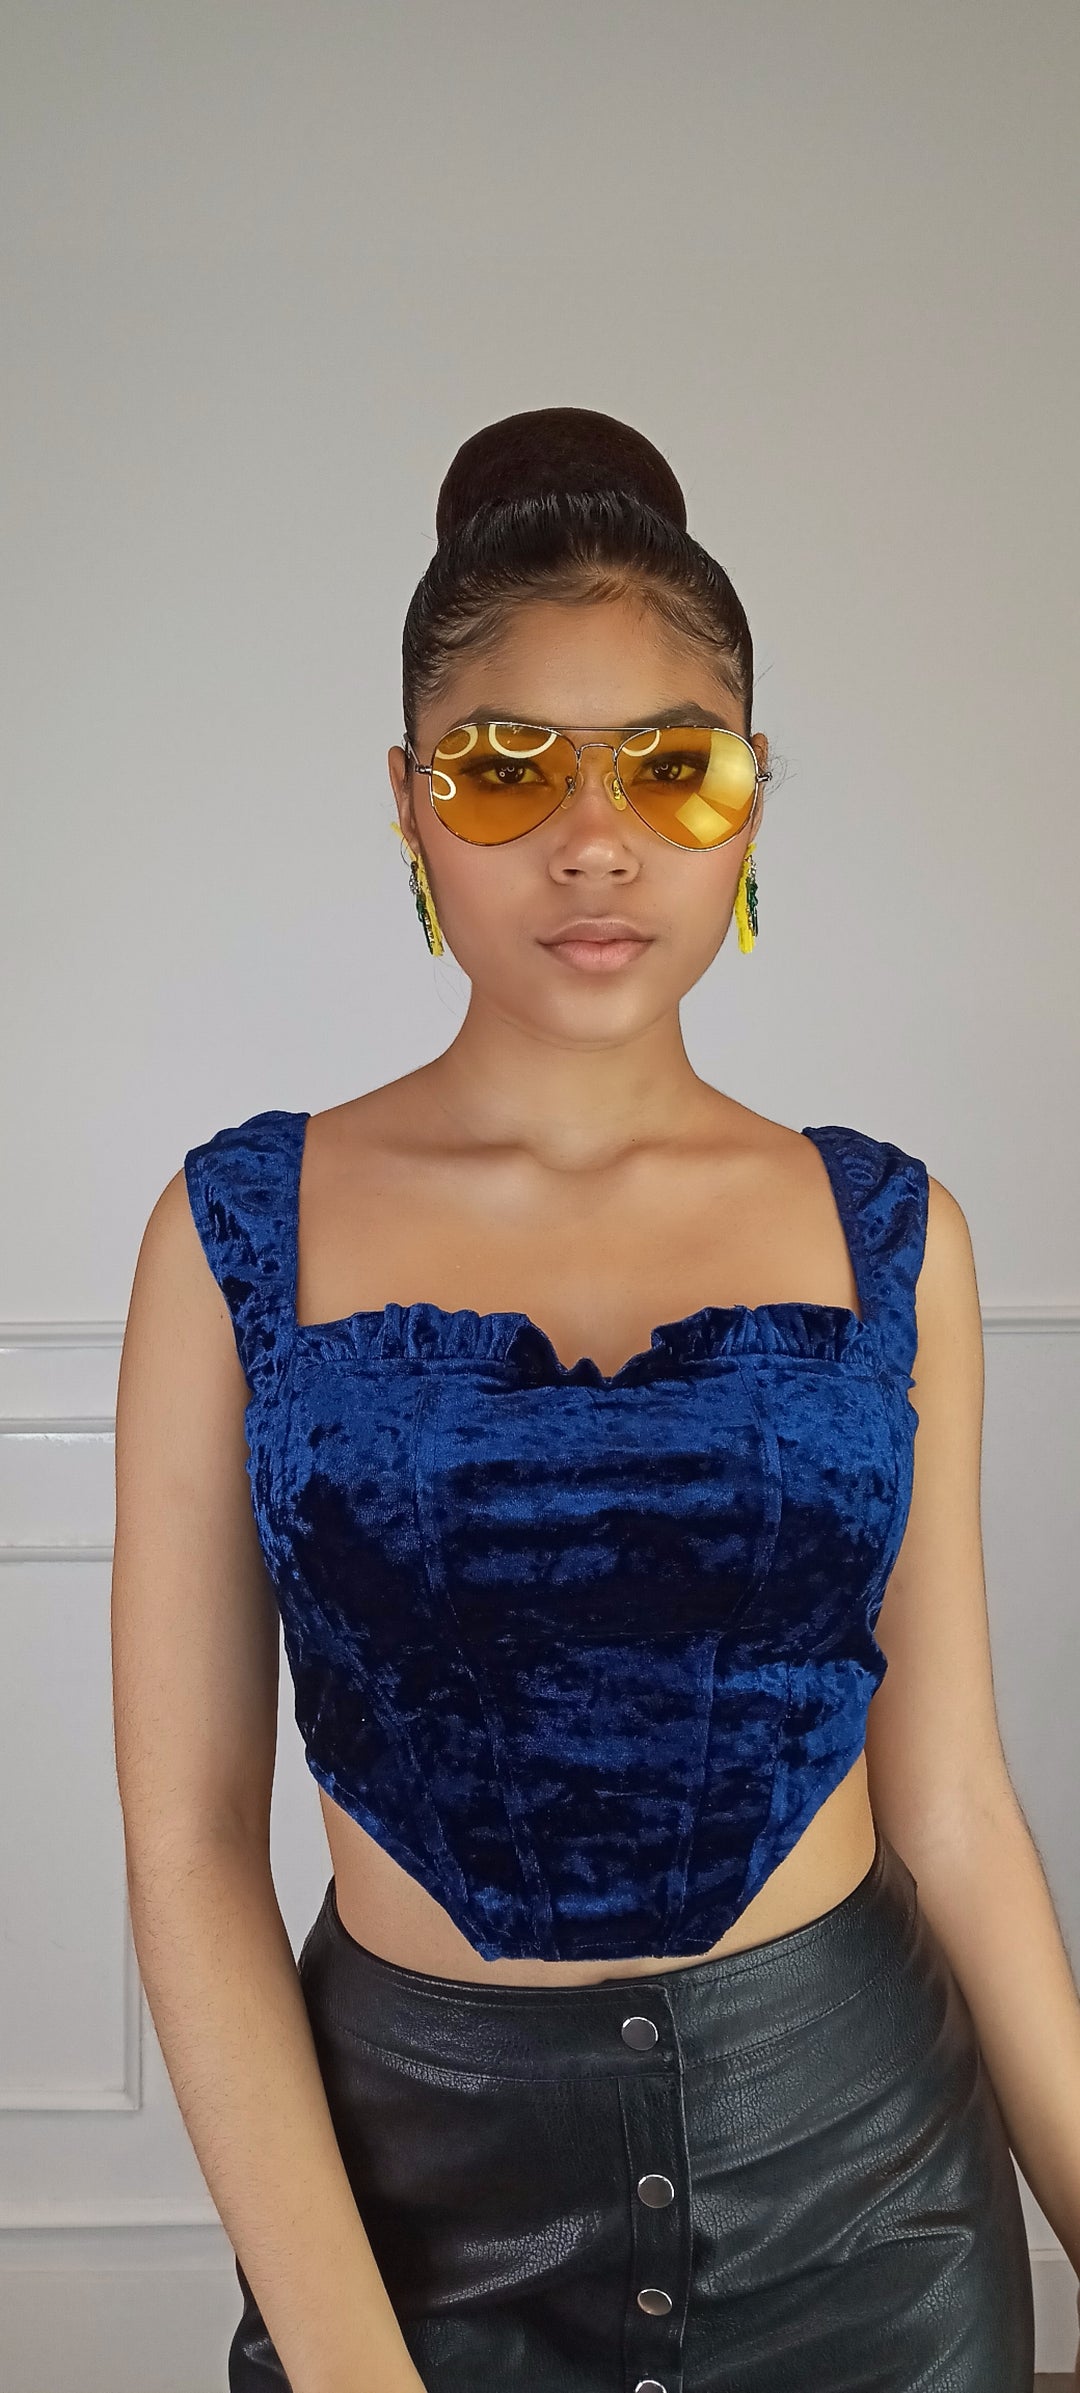 GLITTER IN THE AIR Rose Tint Sunglasses-Accessories-Malandra Boutique-Malandra Boutique, Women's Fashion Boutique Located in Las Vegas, NV